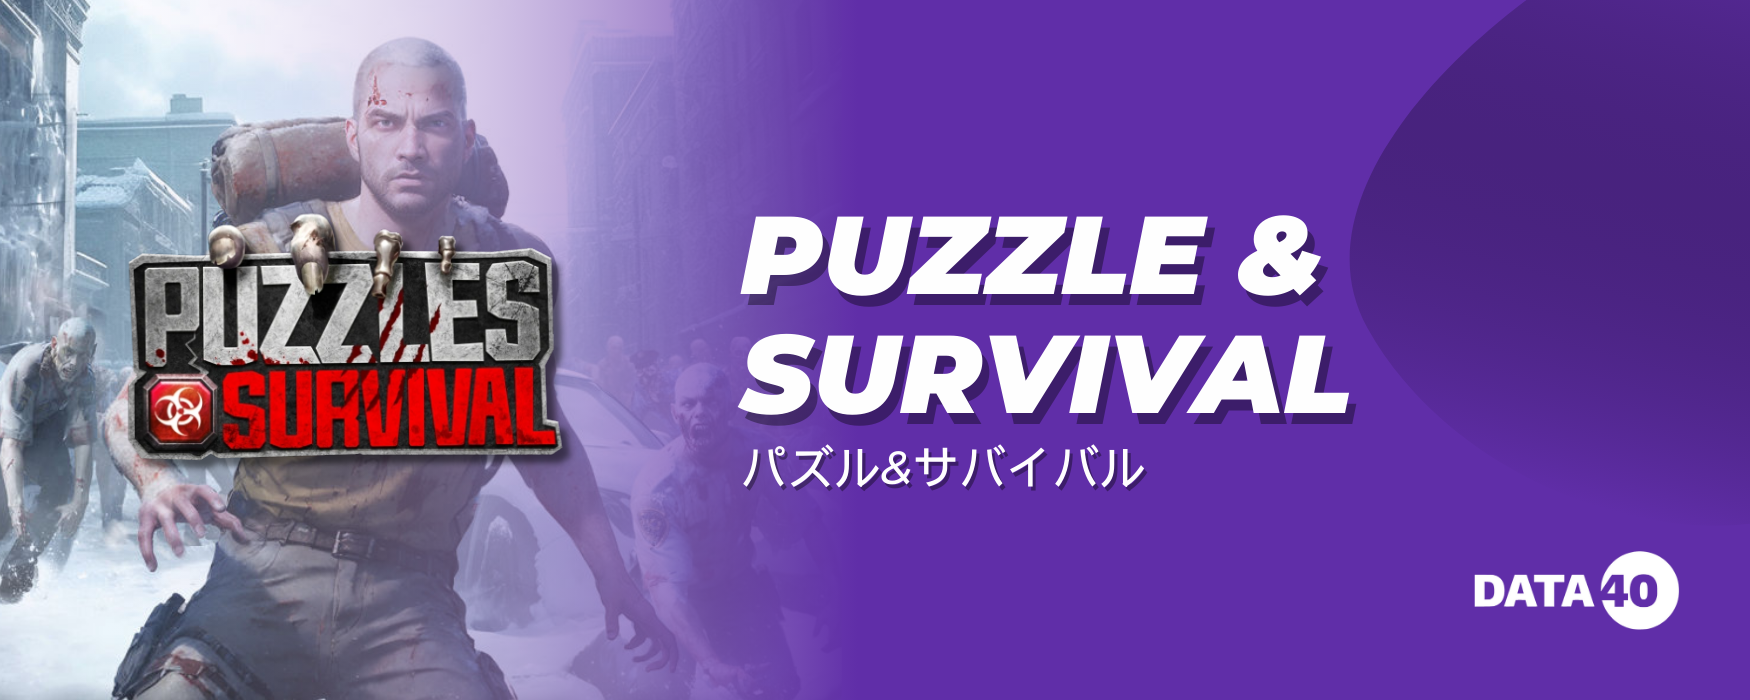 Puzzle & Survival